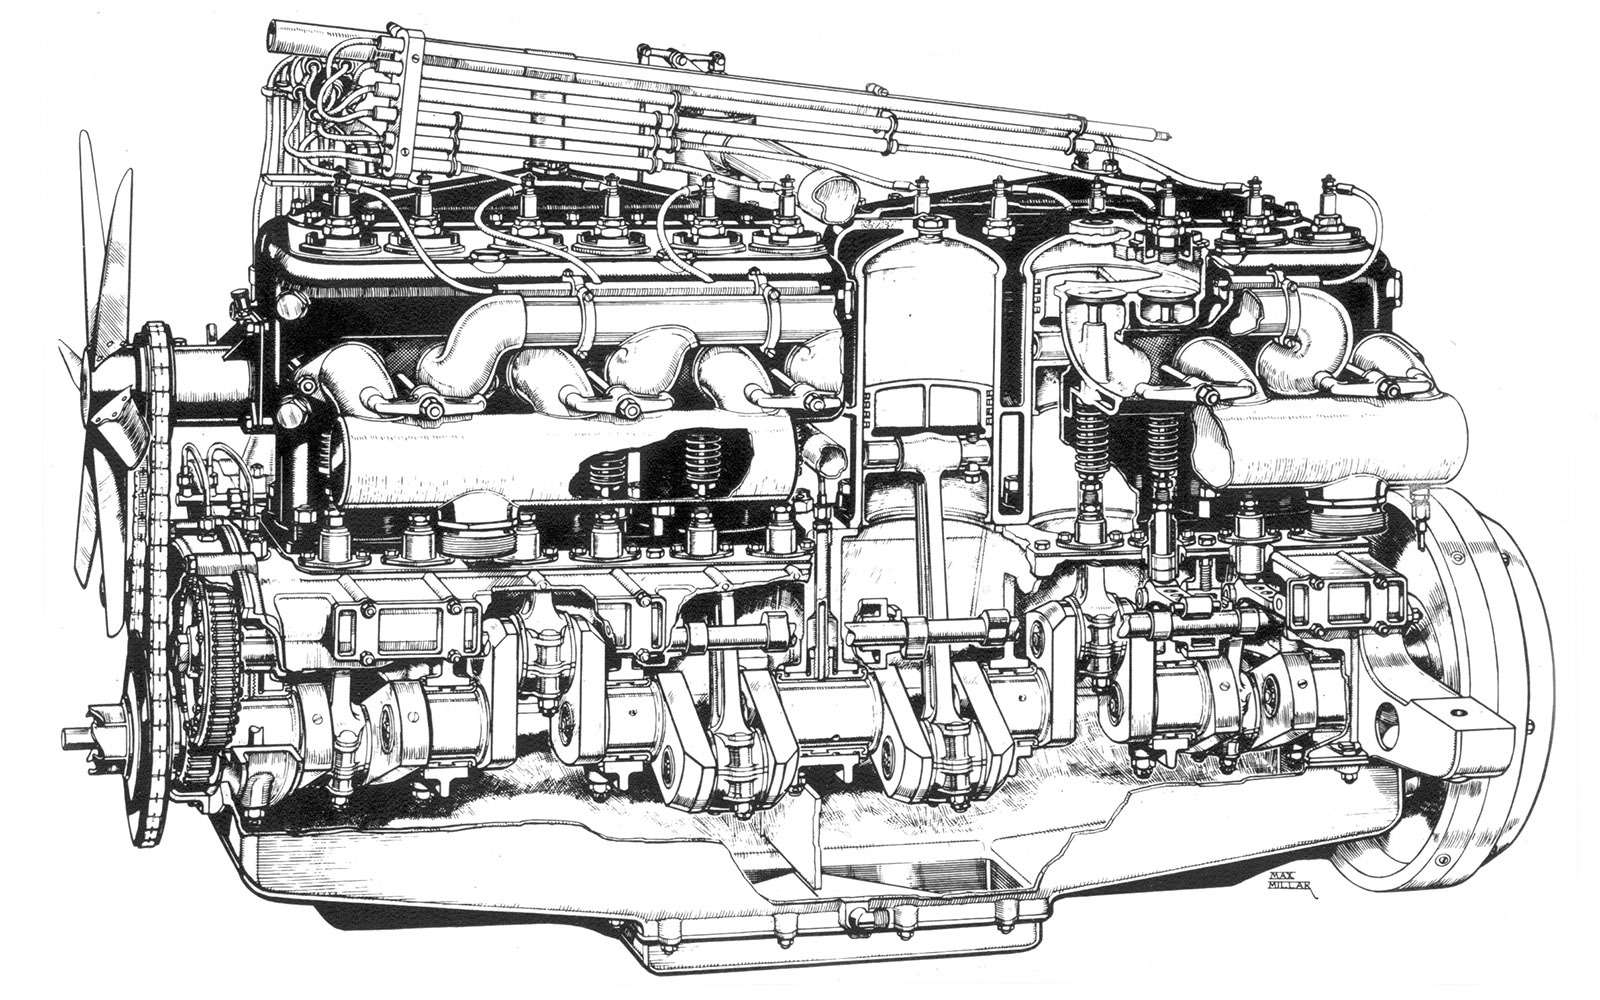 Rolls-Royce Silver Ghost. Его шестицилиндровый двигатель рабочим объемом 7 литров, с двумя свечами на каждый цилиндр, выдавал мощность около 50 сил и работал очень плавно.